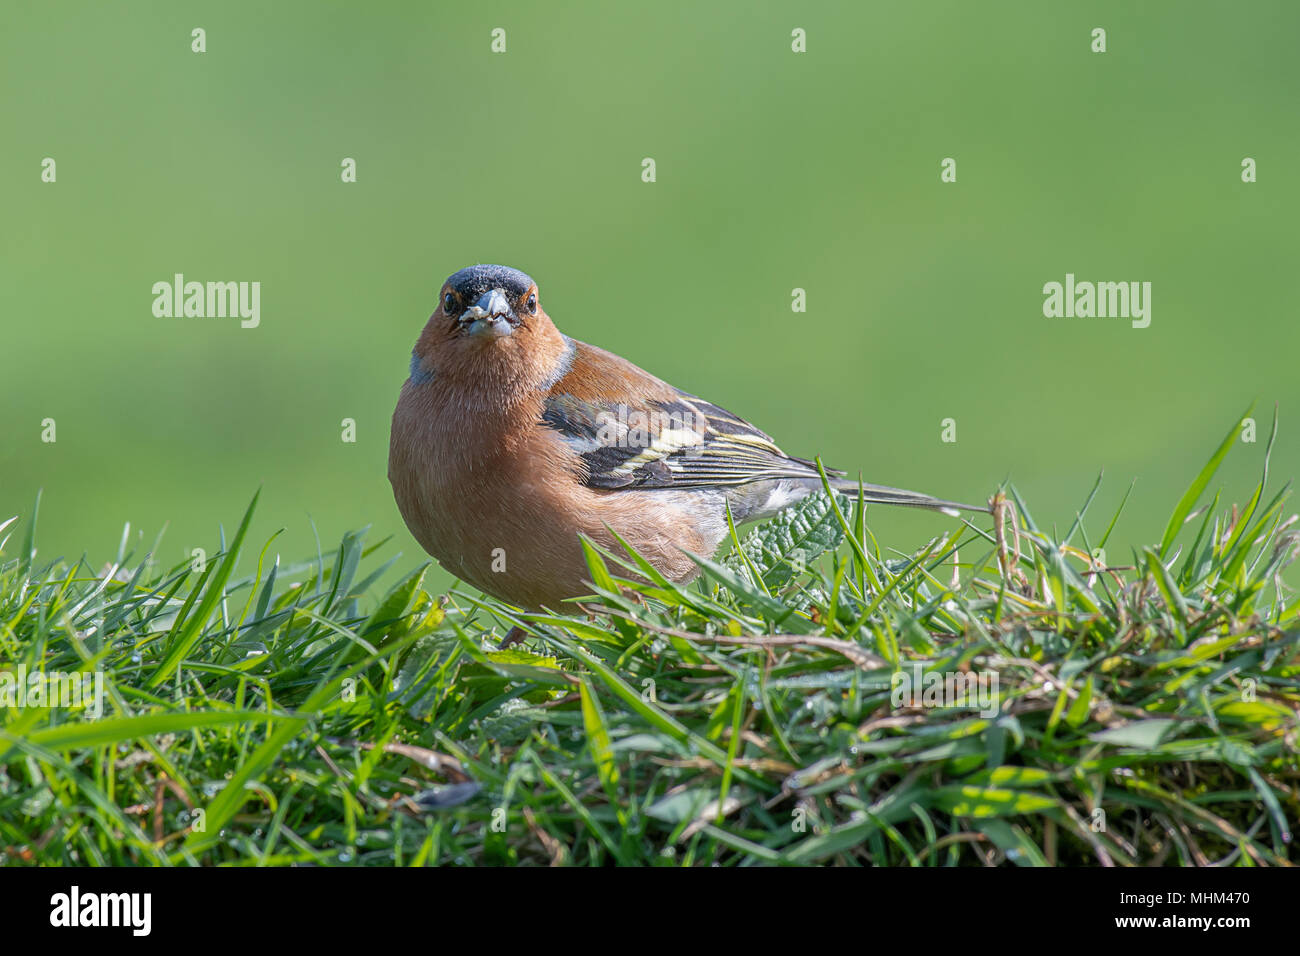 Ein Männchen Buchfink sitzt auf der Spitze eines Gras Bank essen Samen und starrte direkt in die Kamera Linse gehockt Stockfoto